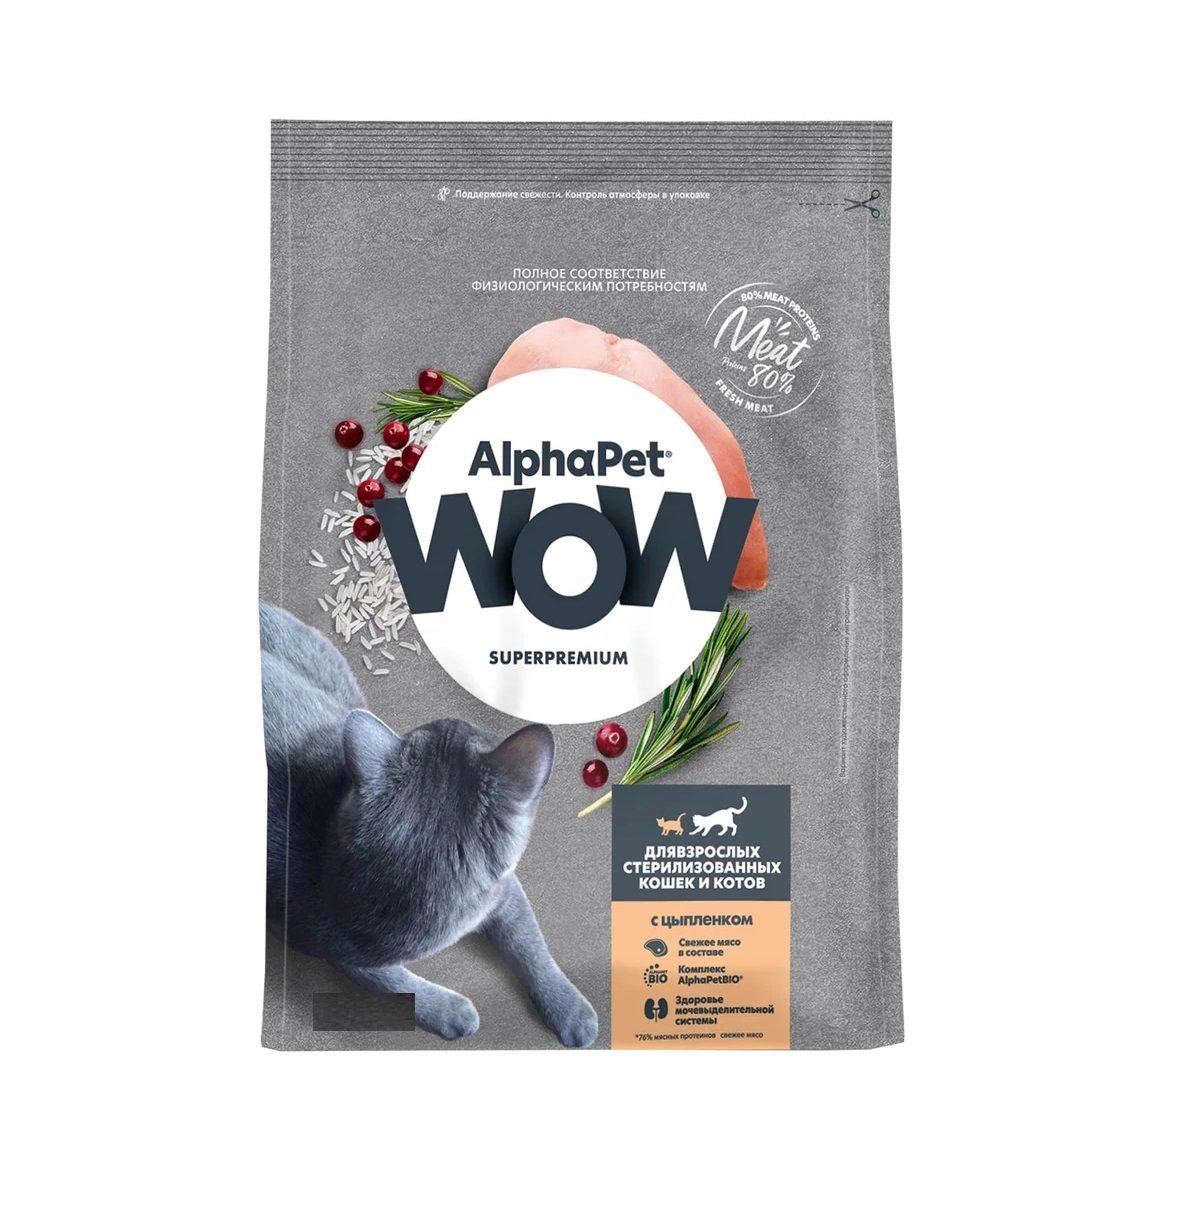 АльфаПет WOW 1,5кг - для Стерилизованных кошек, Цыпленок (Alpha Pet WOW)